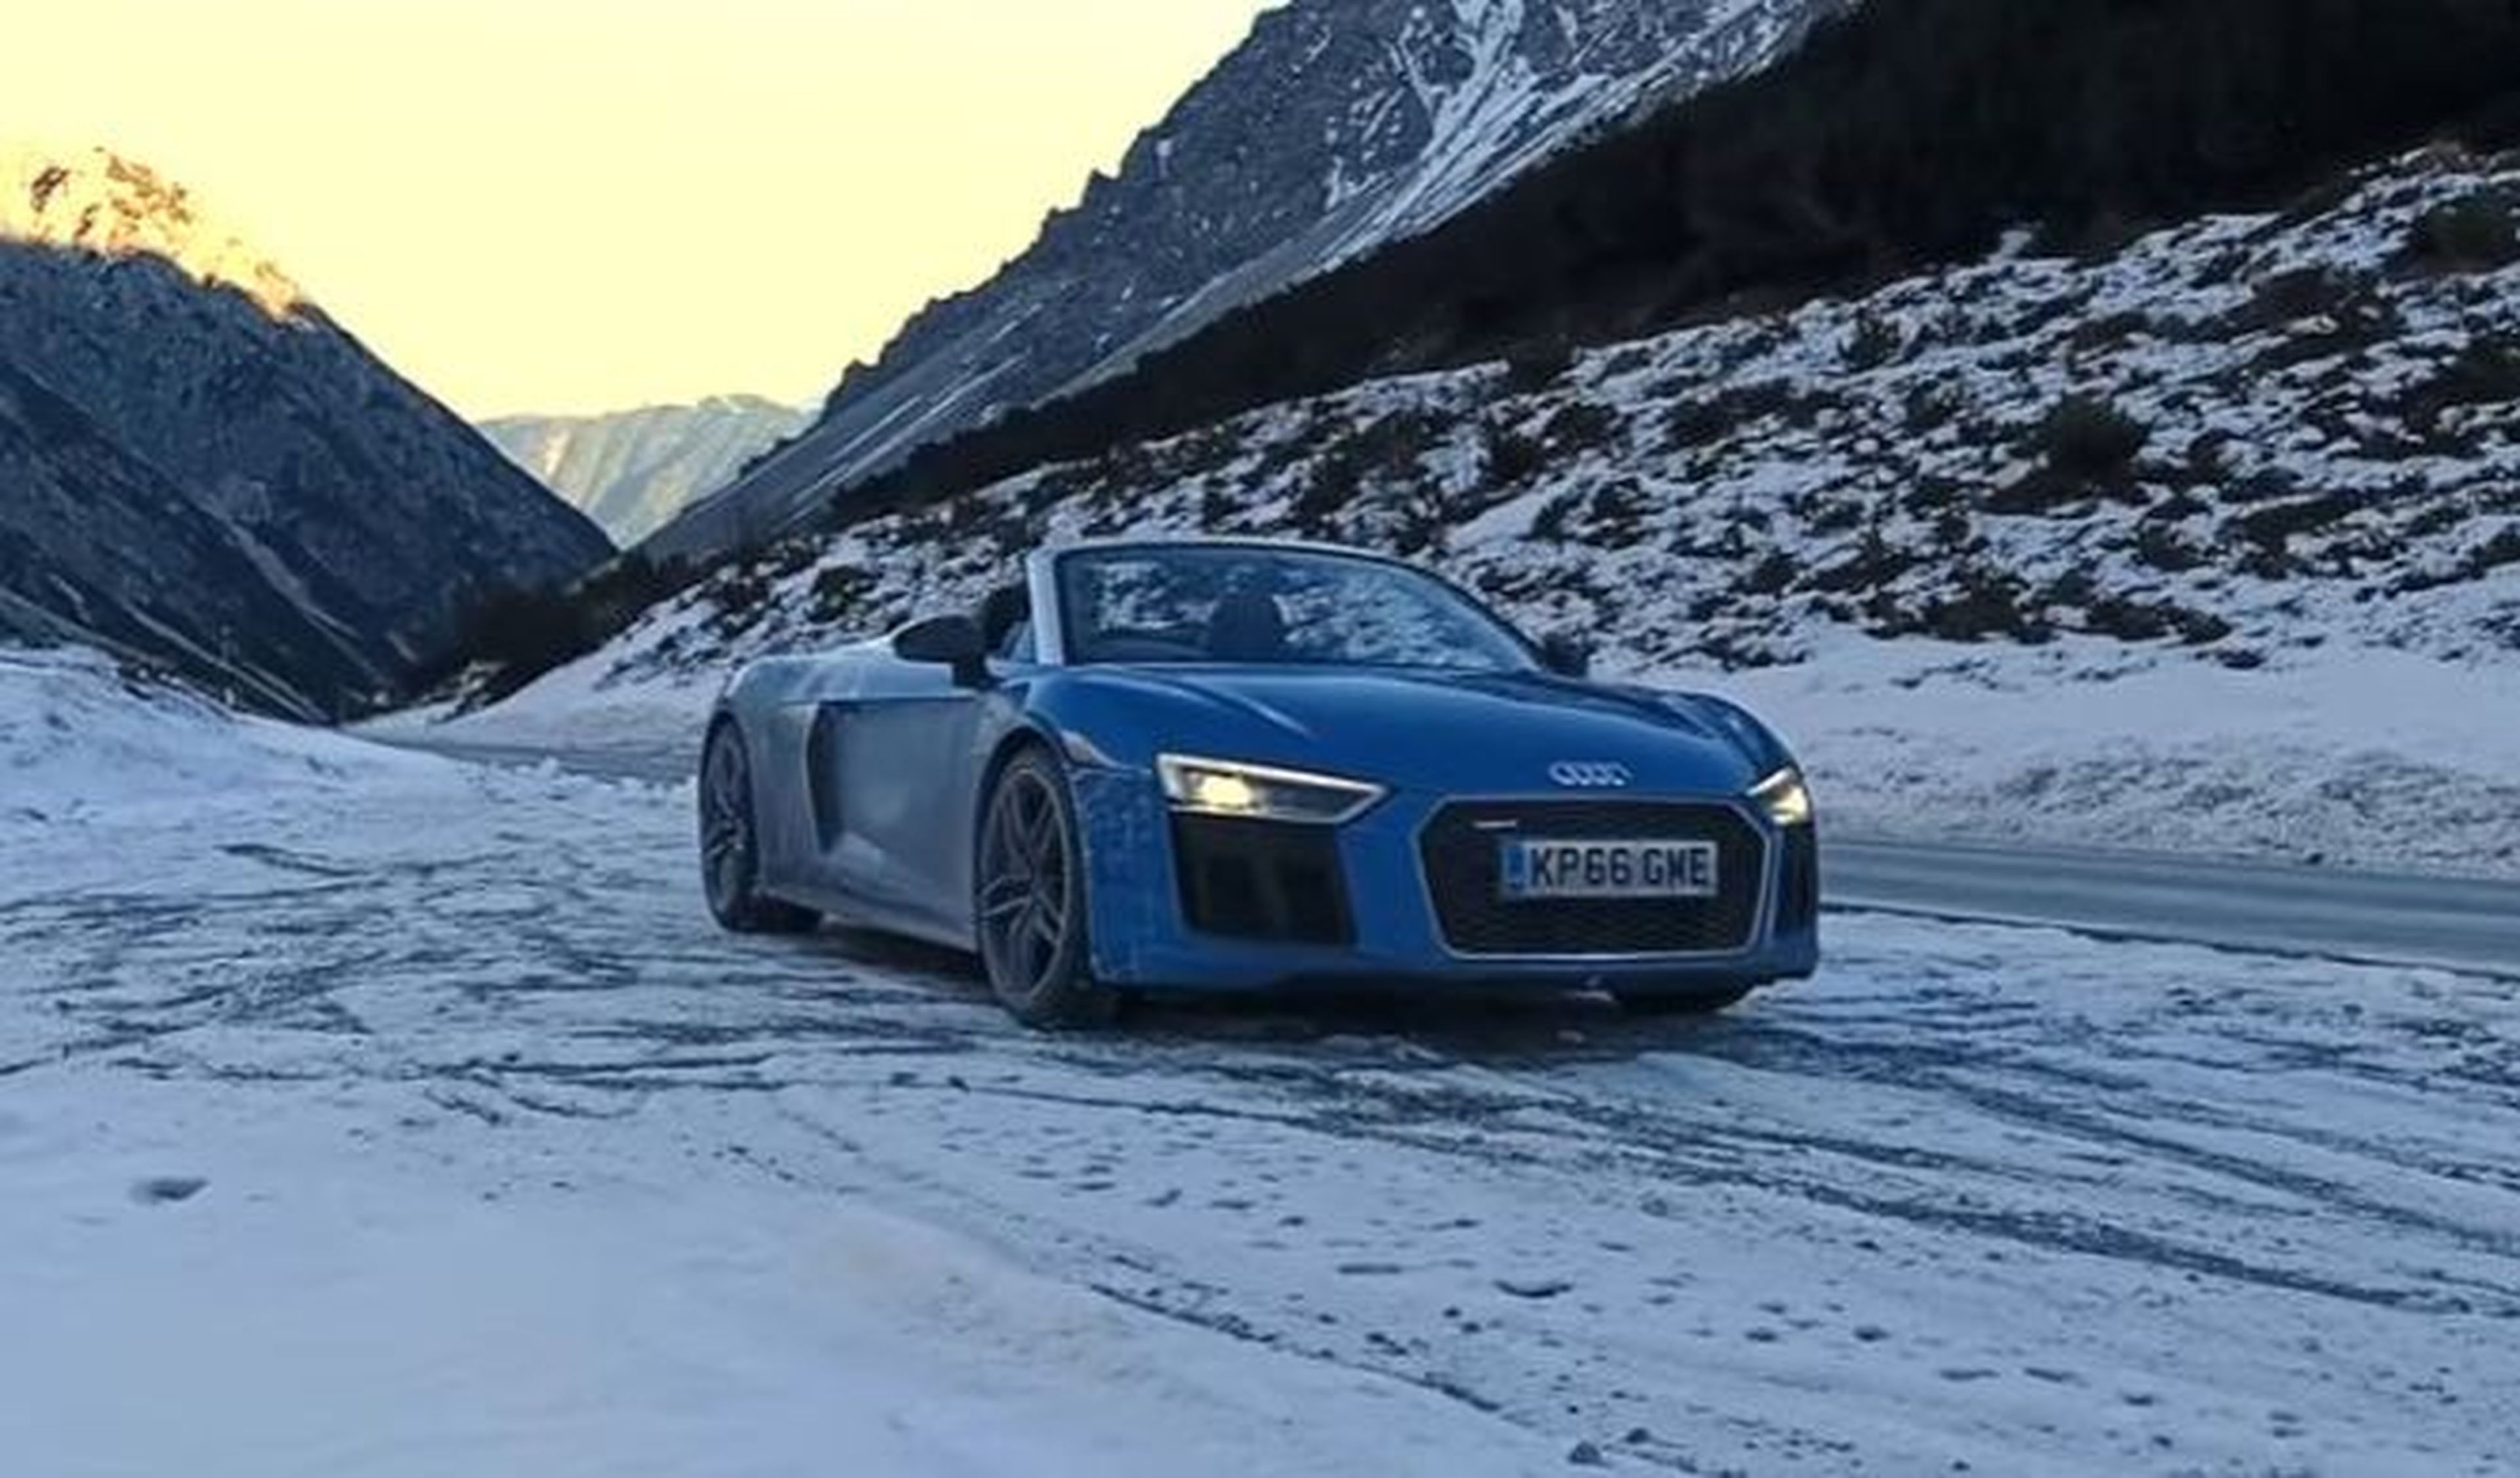 Vídeo: ¡enamórate! Los Alpes con un Audi R8 Spyder